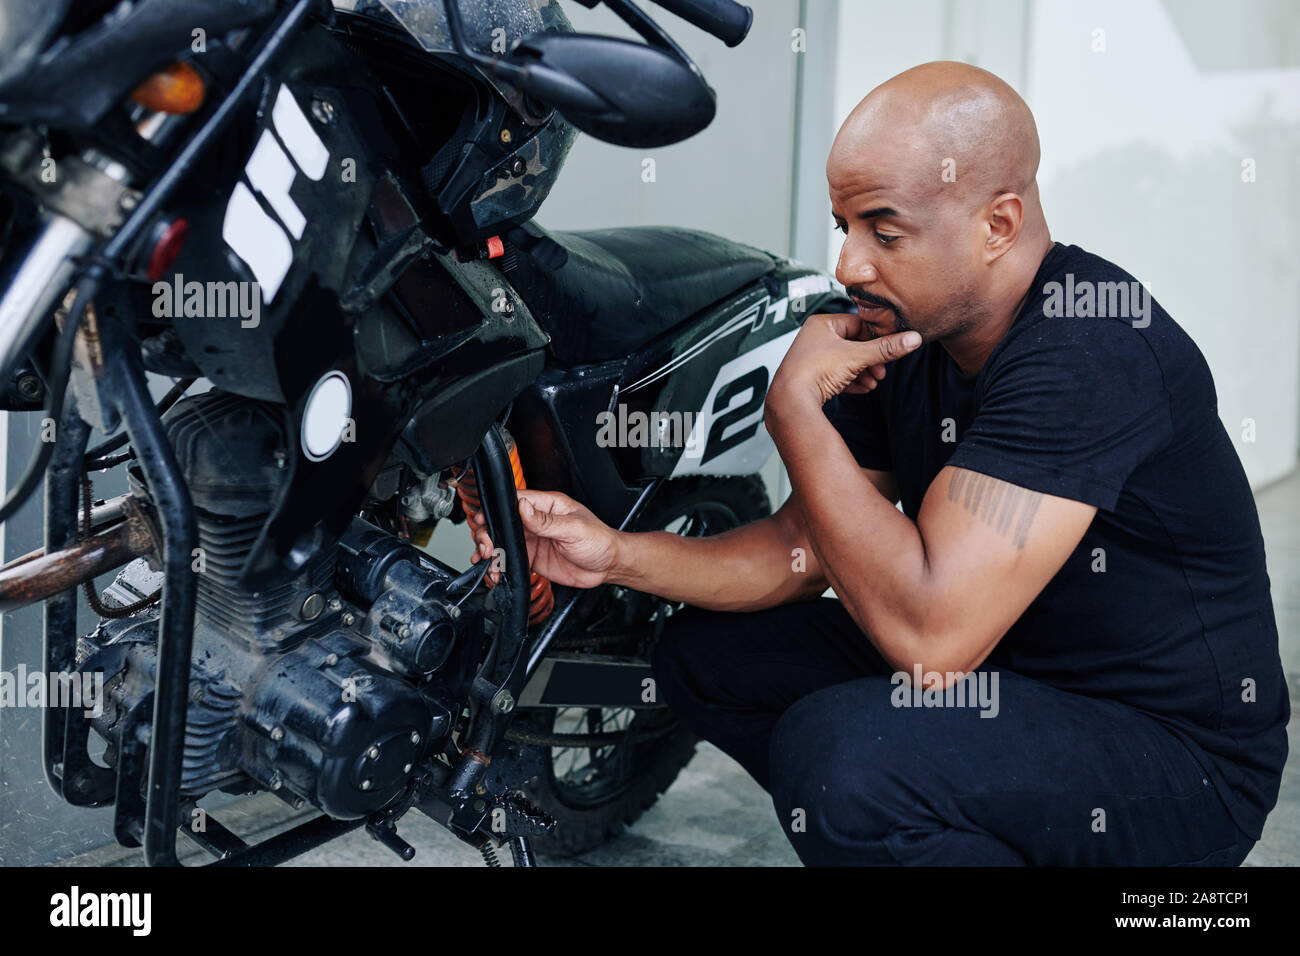 Nachdenklicher Mann am Motor von seinem Motorrad suchen und versuchen,  herauszufinden, warum es nicht funktioniert Stockfotografie - Alamy